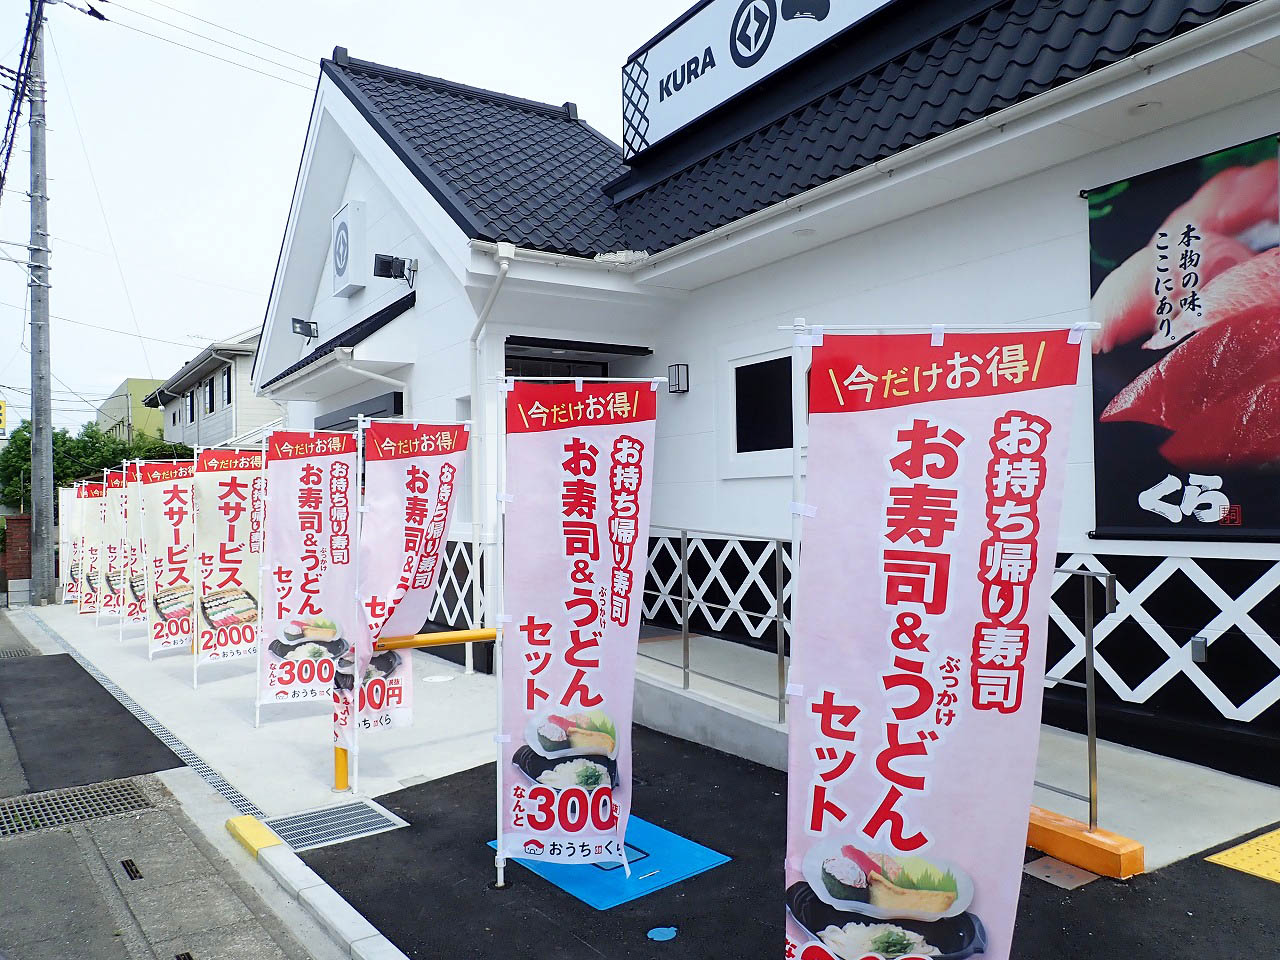 2020年4月にオープンした『くら寿司・川越的場店』のノボリ